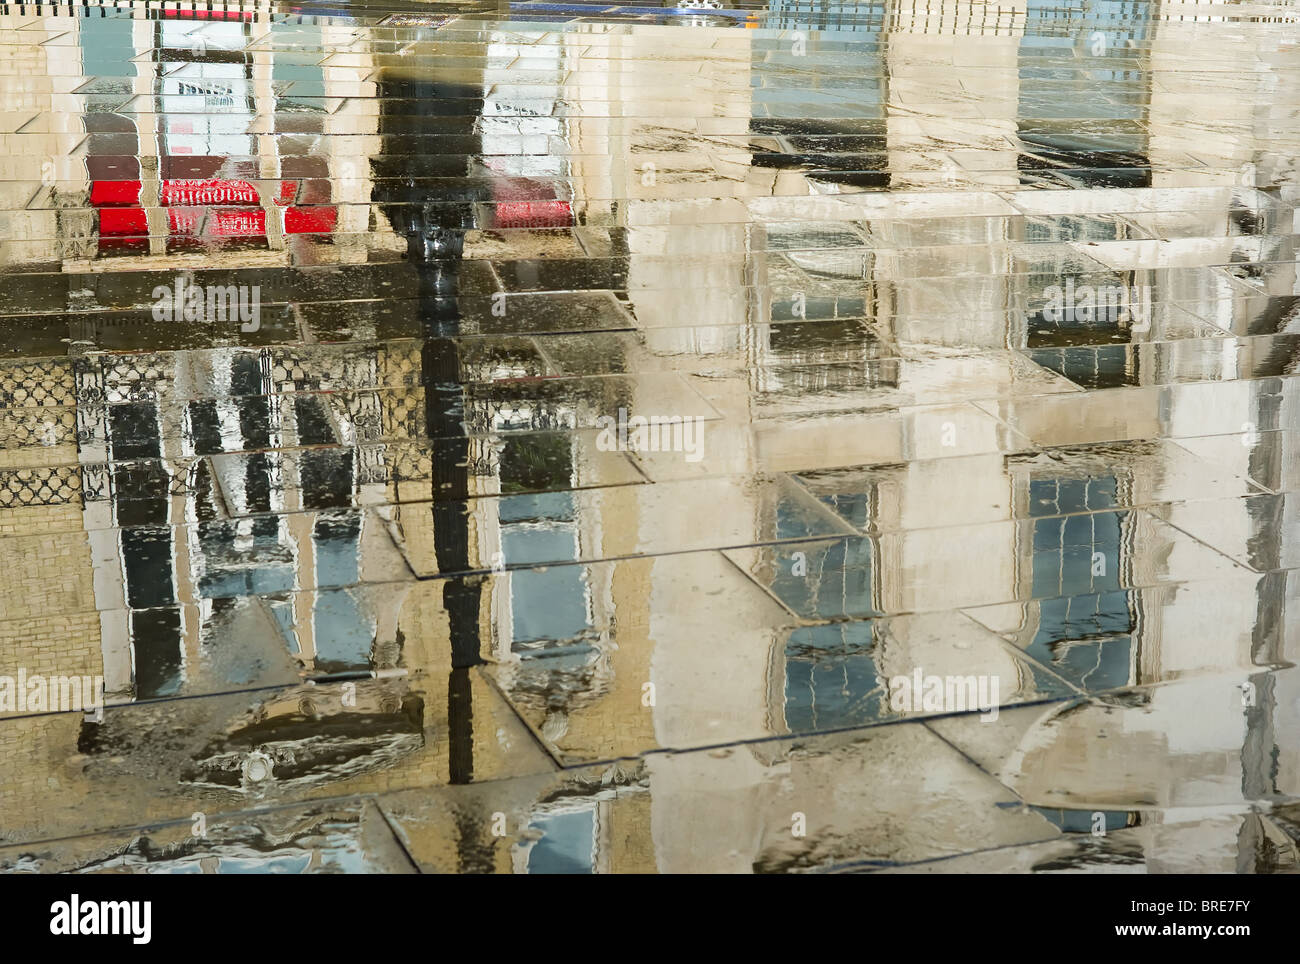 Reflète les bâtiments sur le trottoir après une brève douche à Londres, Angleterre, Royaume-Uni. Banque D'Images